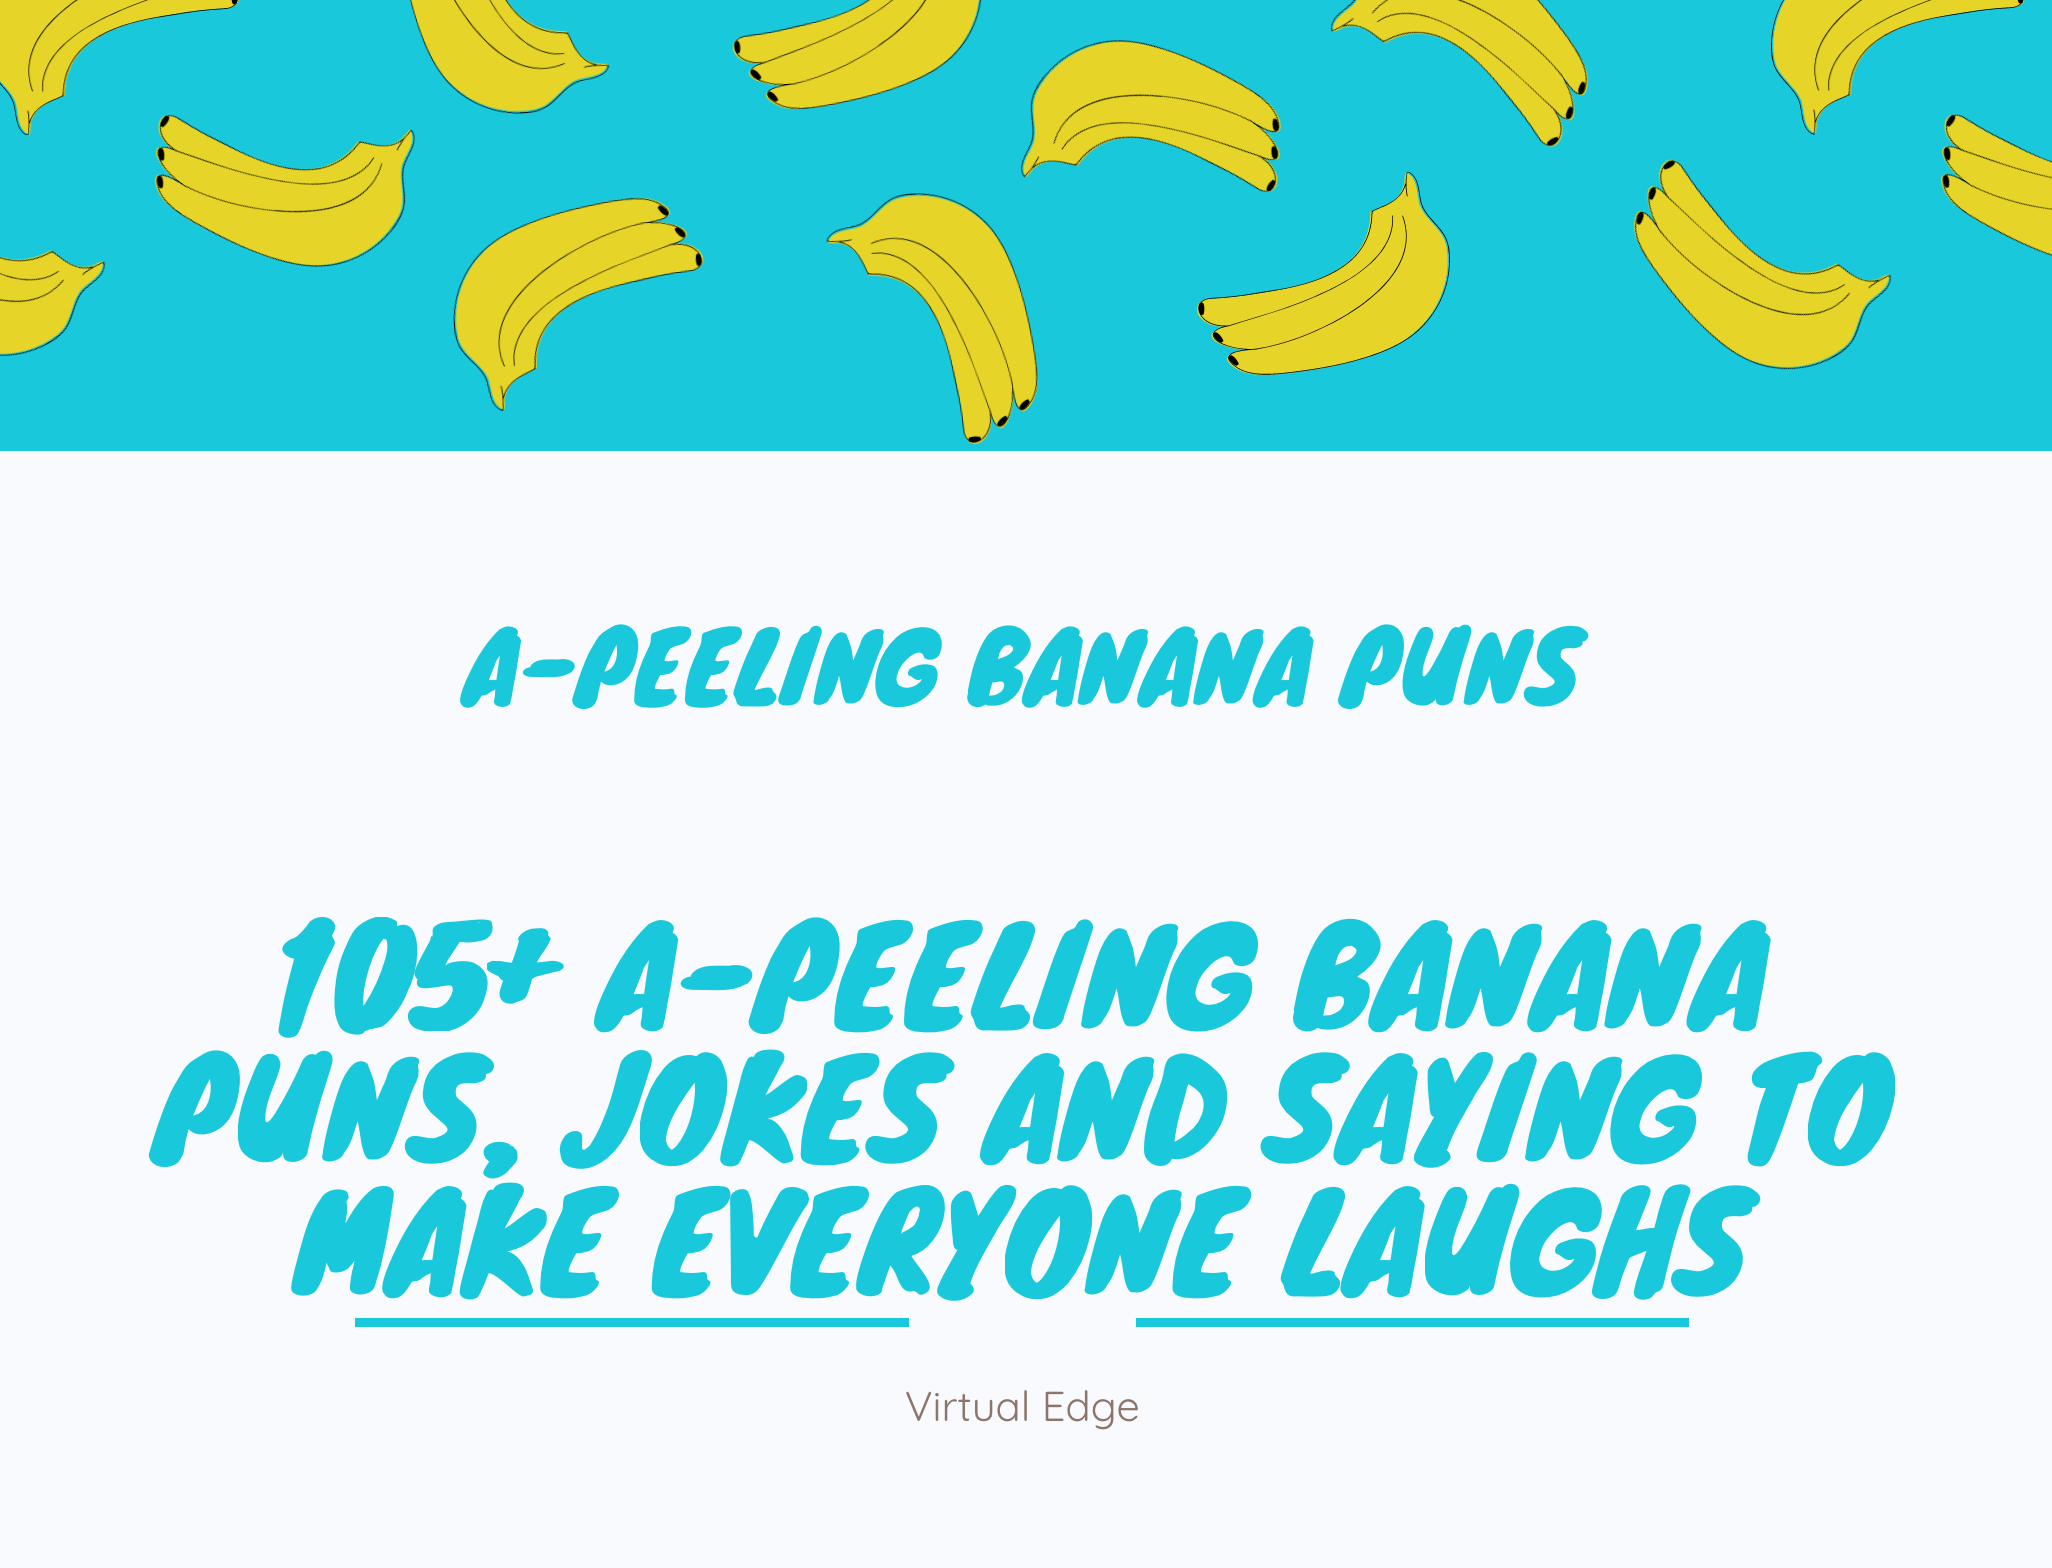 105+ A-Peeling Banana Puns, Jokes and Saying to Make Everyone Laughs